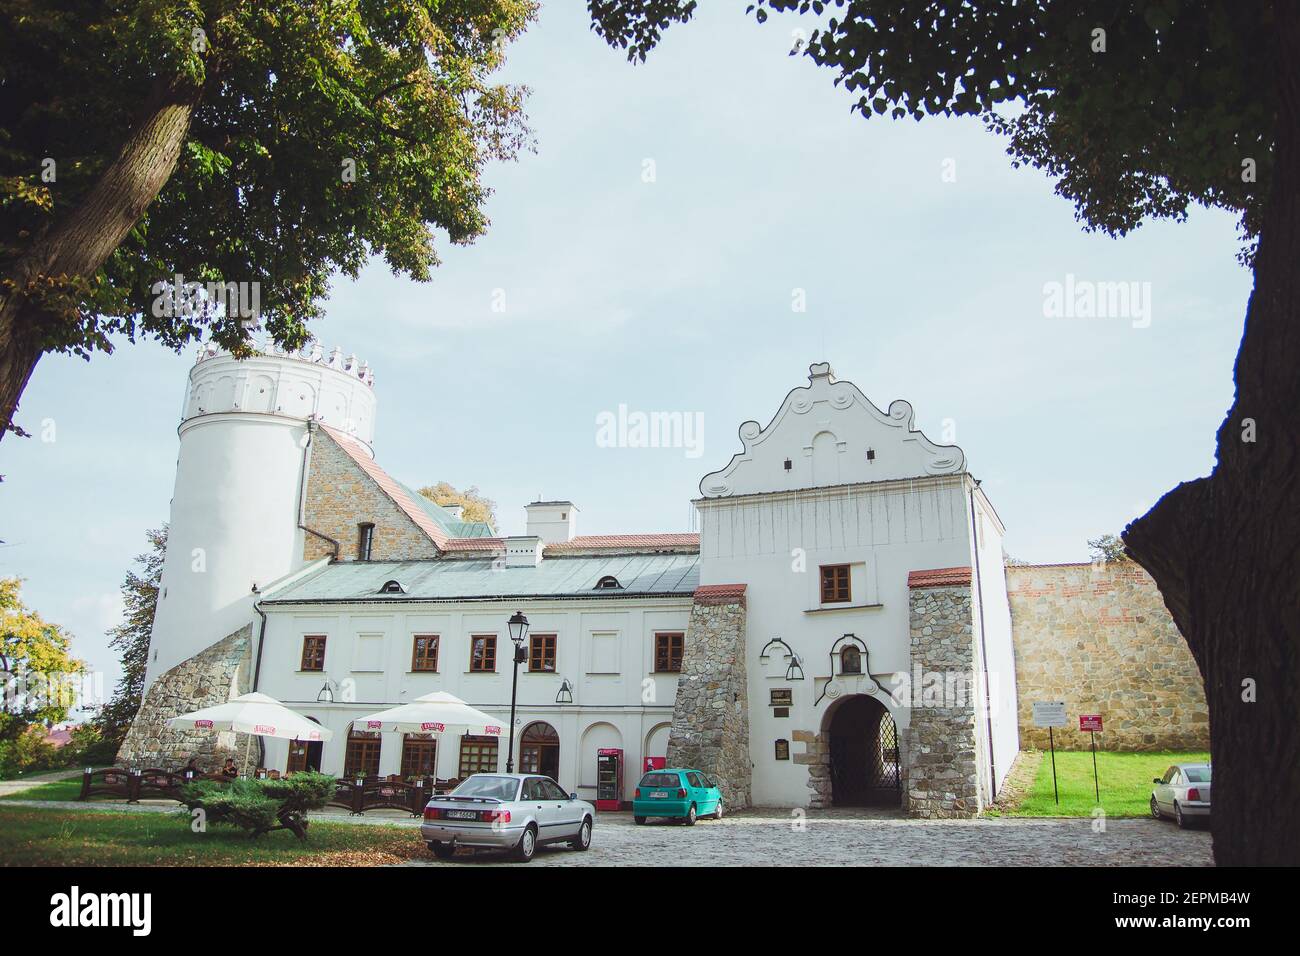 Przemysl, Polonia - Ottobre, 2016: Castello di Przemysl o Castello di Casimir, XIV secolo è una cittadella rinascimentale a Przemysl. Si trova sulla collina del Castello. Foto Stock